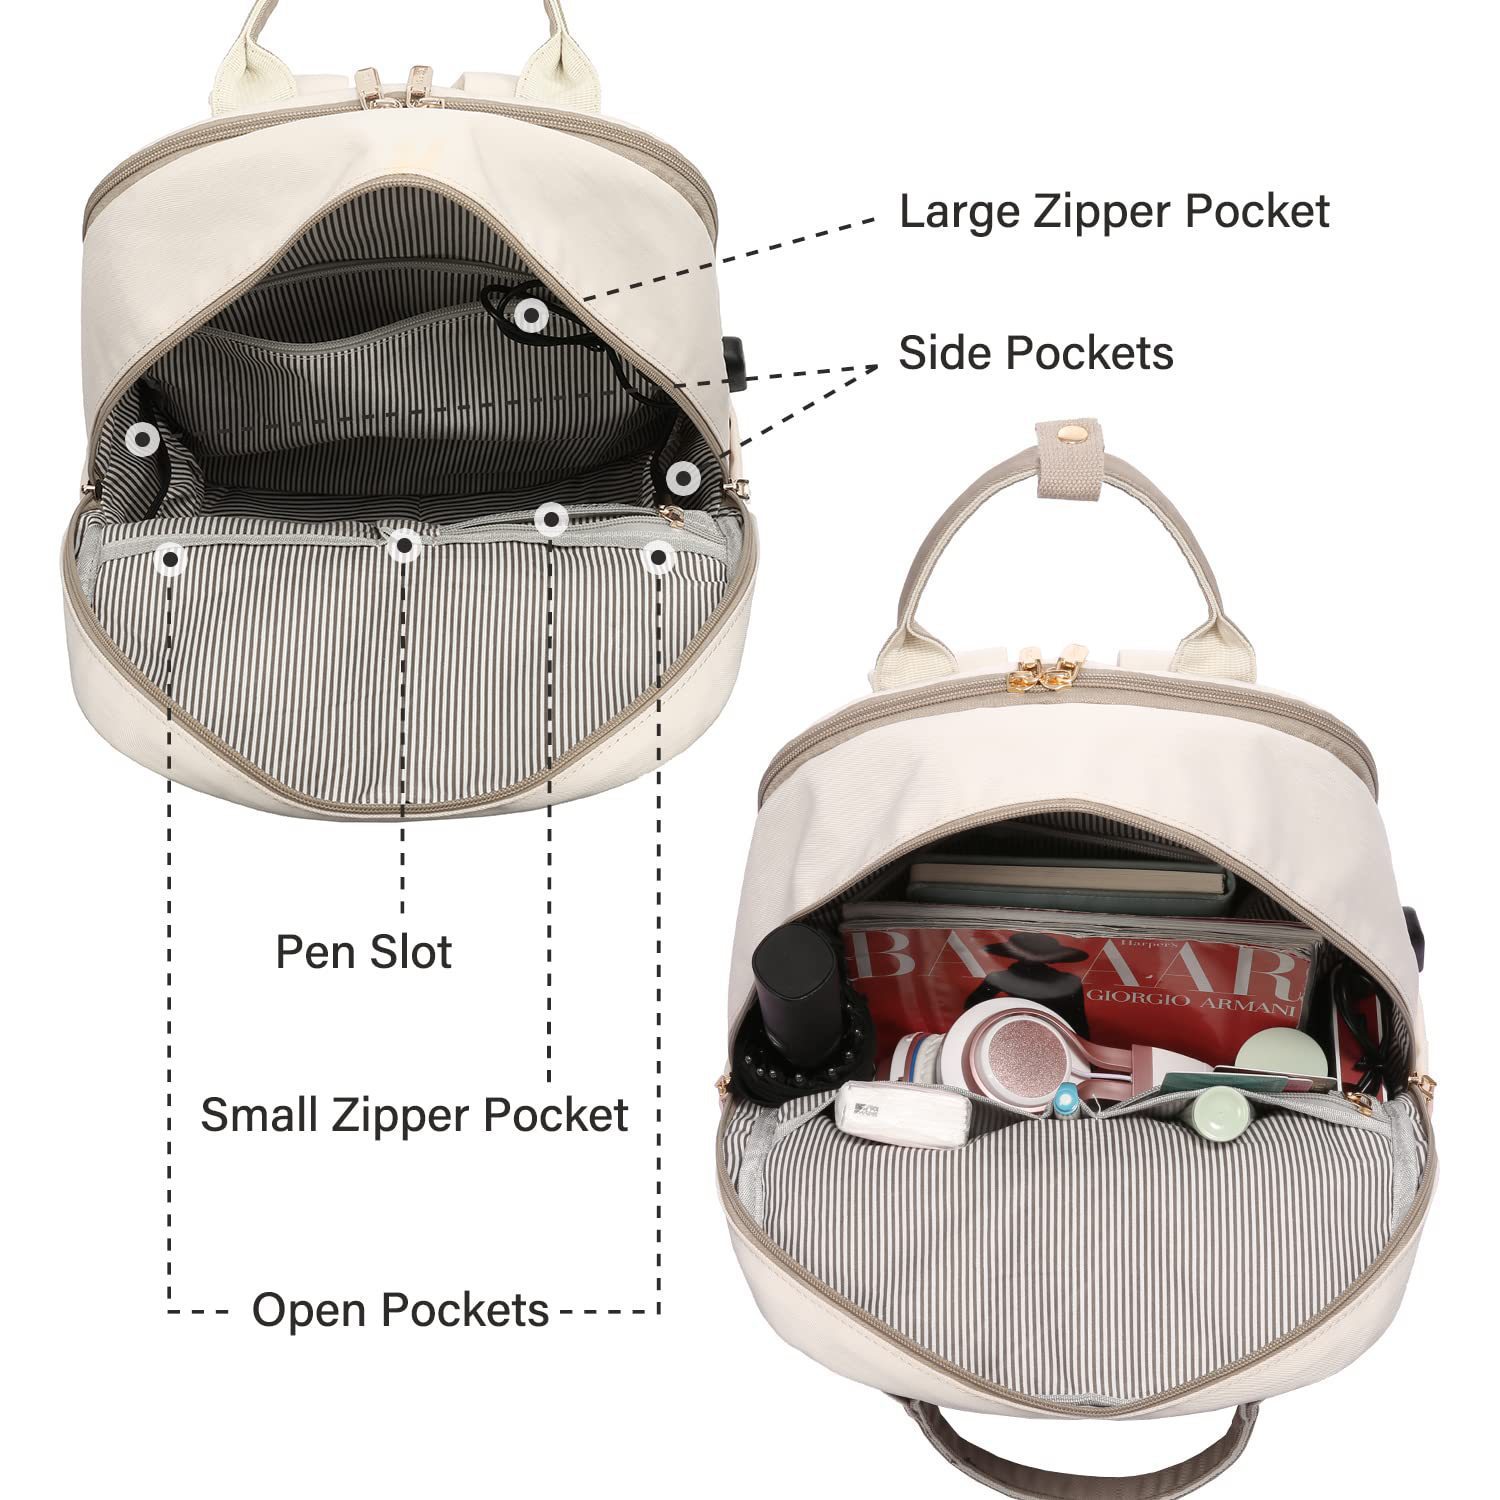 Zipper backpack